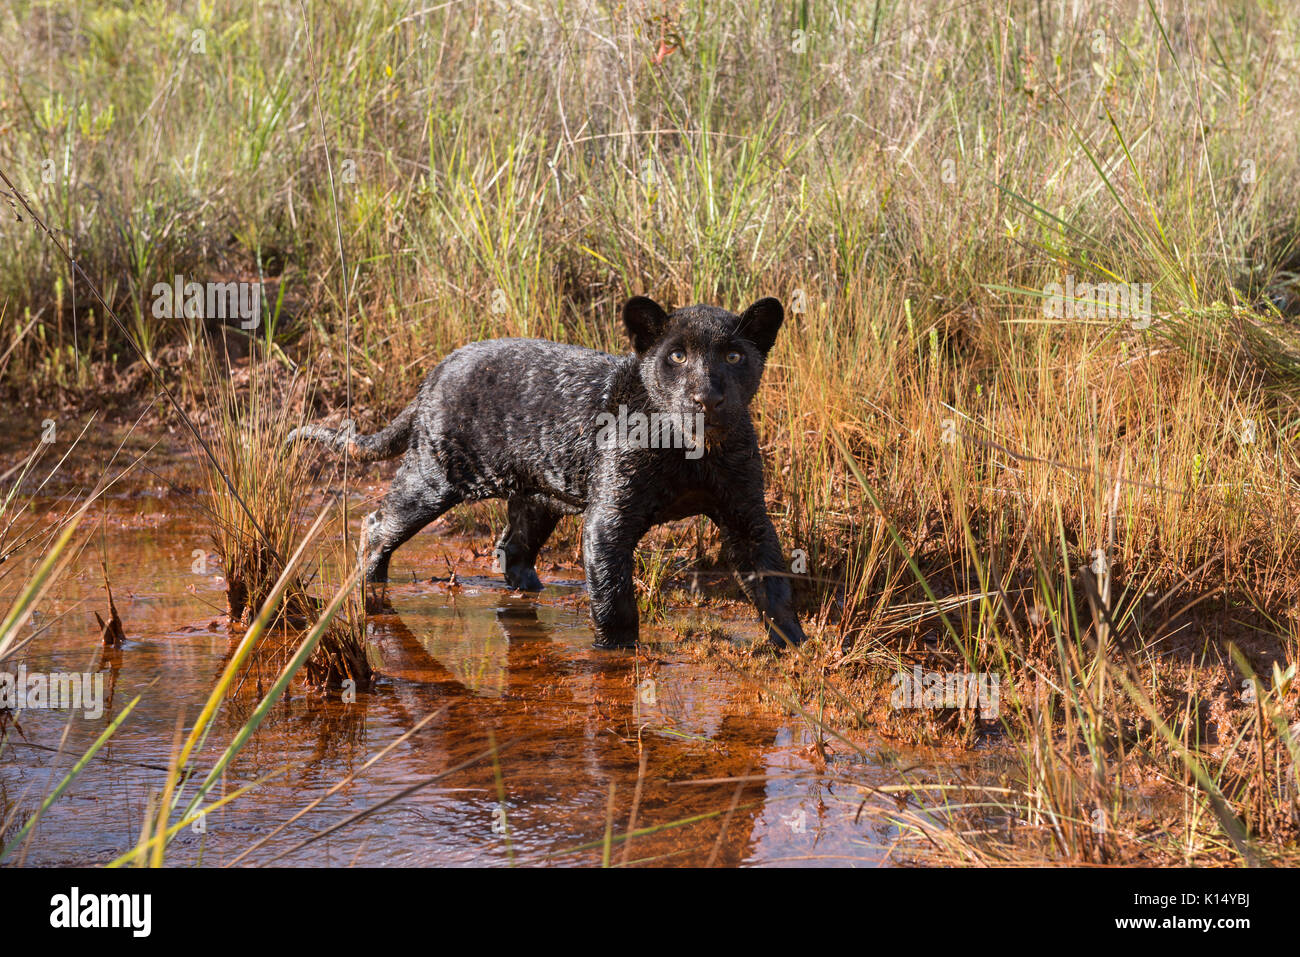 Baby Black Jaguar at water's edge Stock Photo